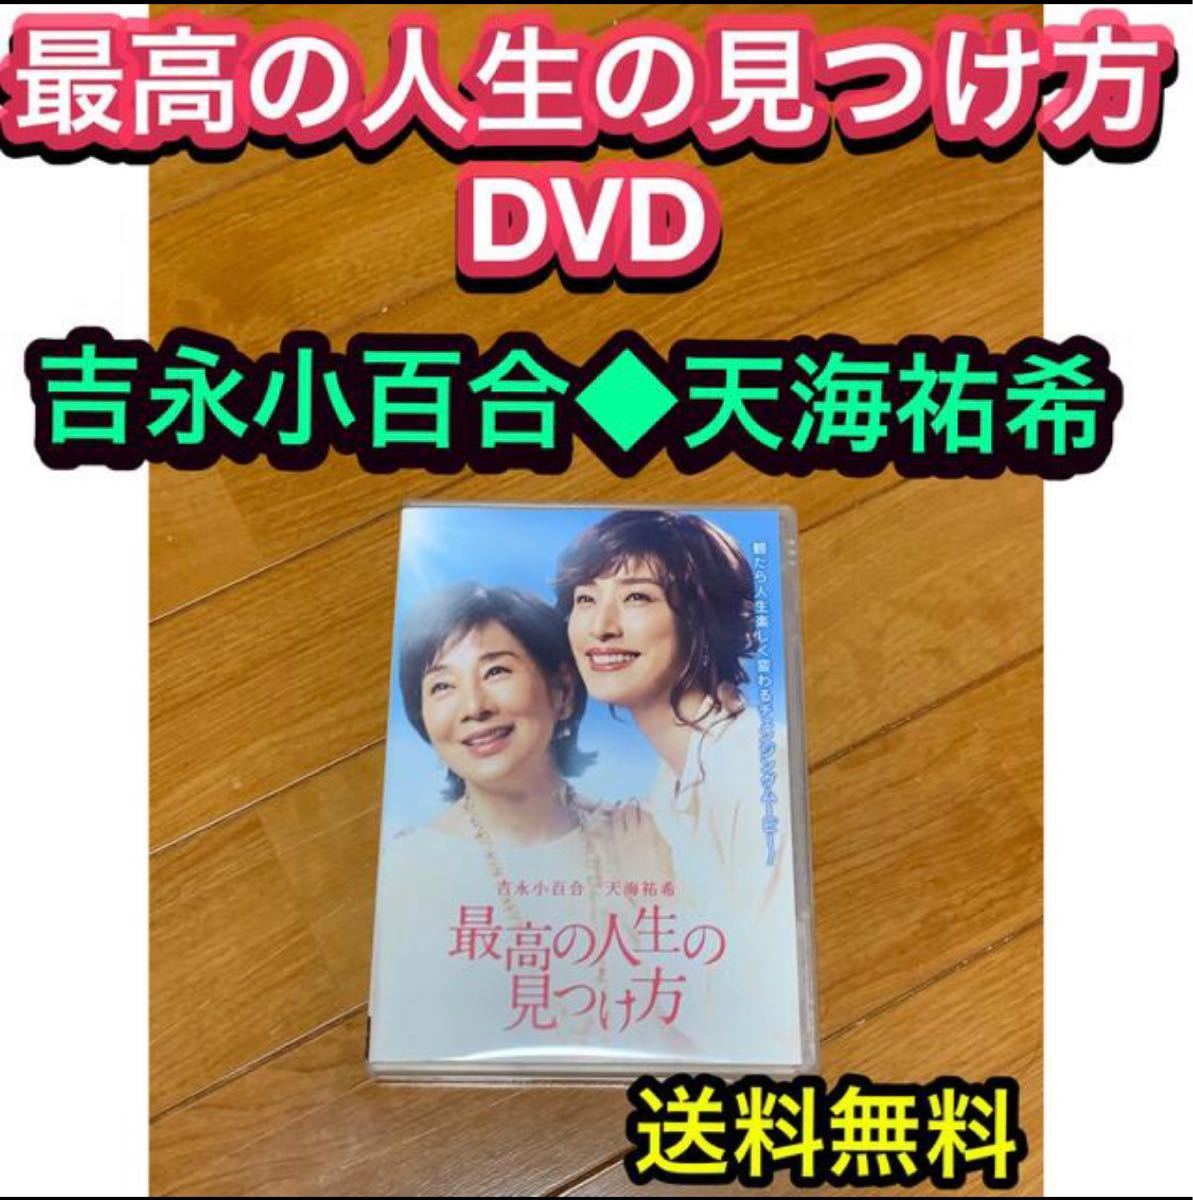 【送料無料】最高の人生の見つけ方 DVD 吉永小百合 天海祐希